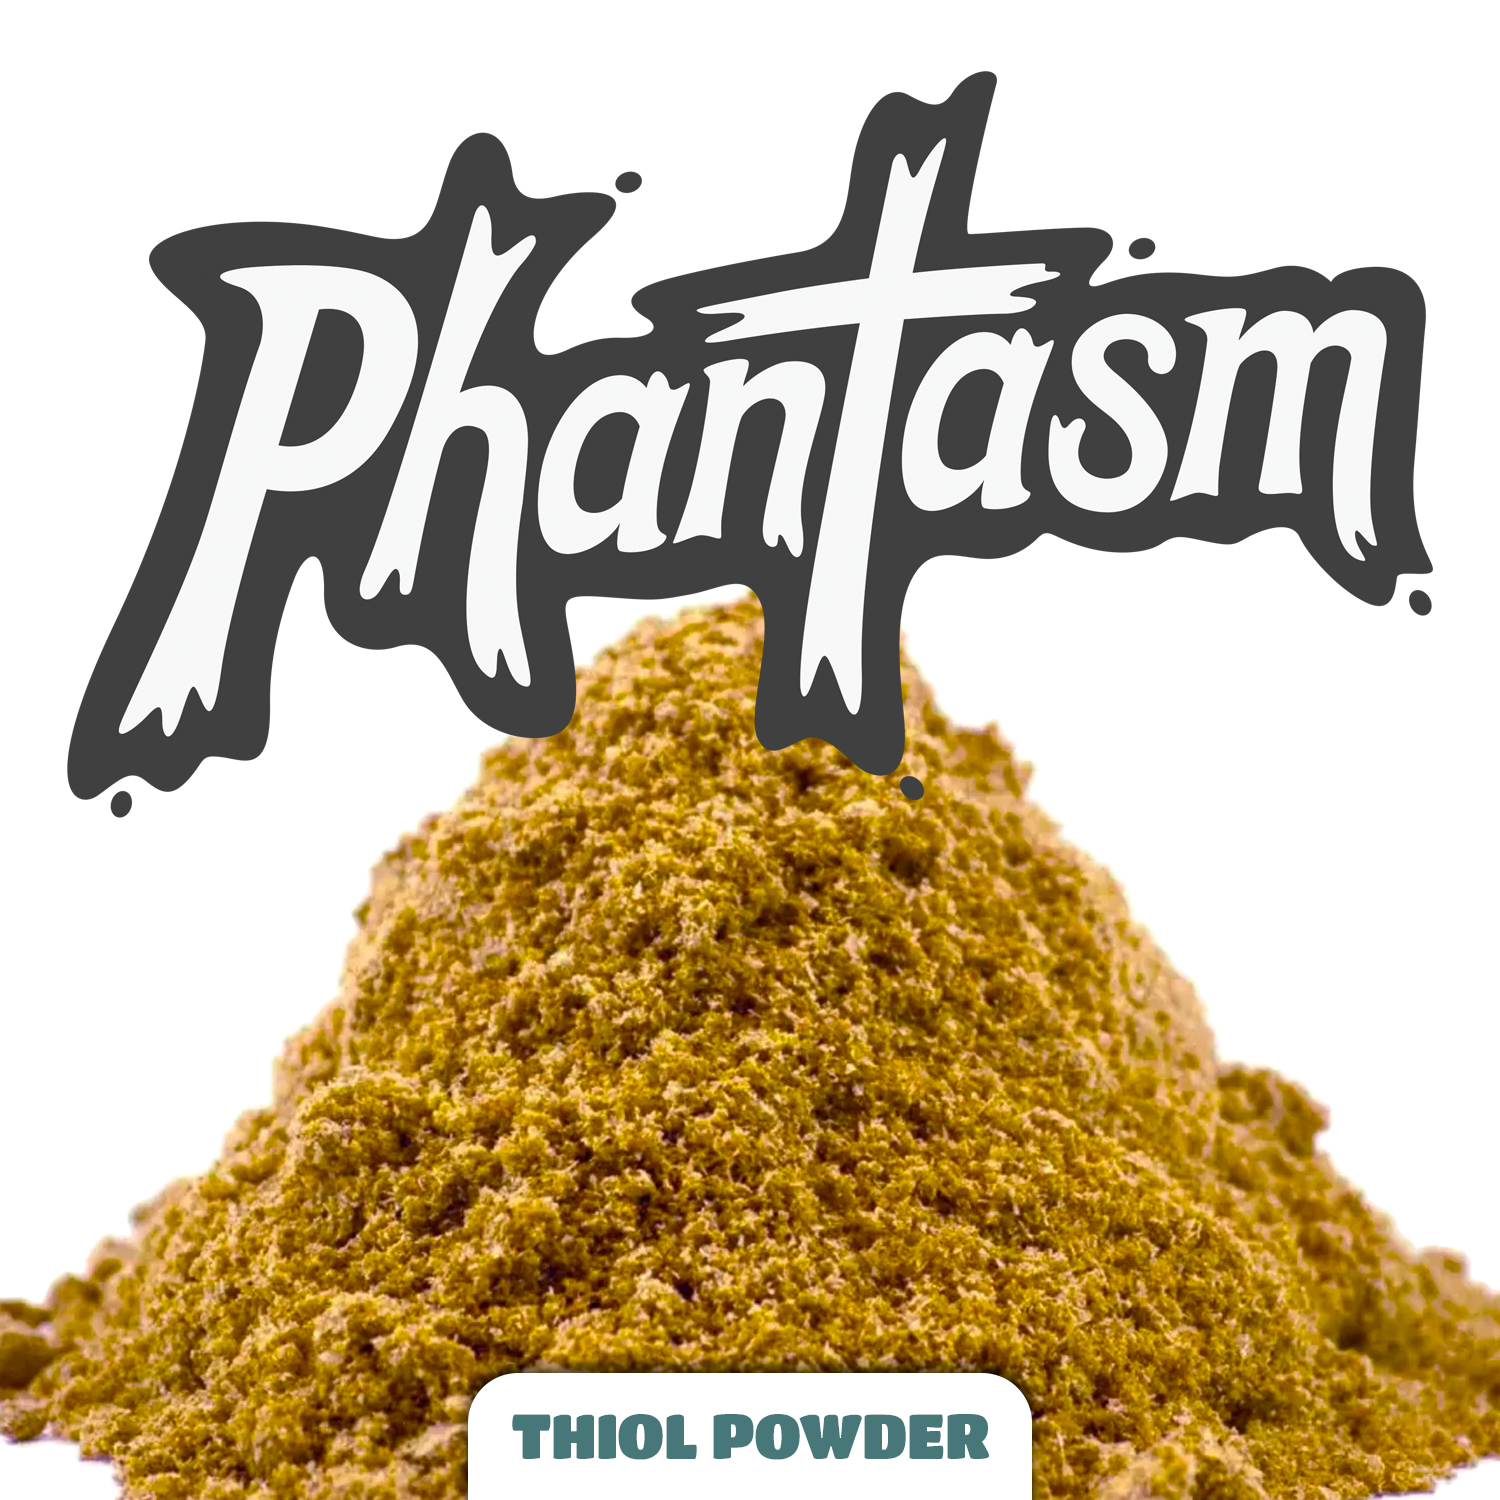 Phantasm Thiol Powder NZ MORE COMING!